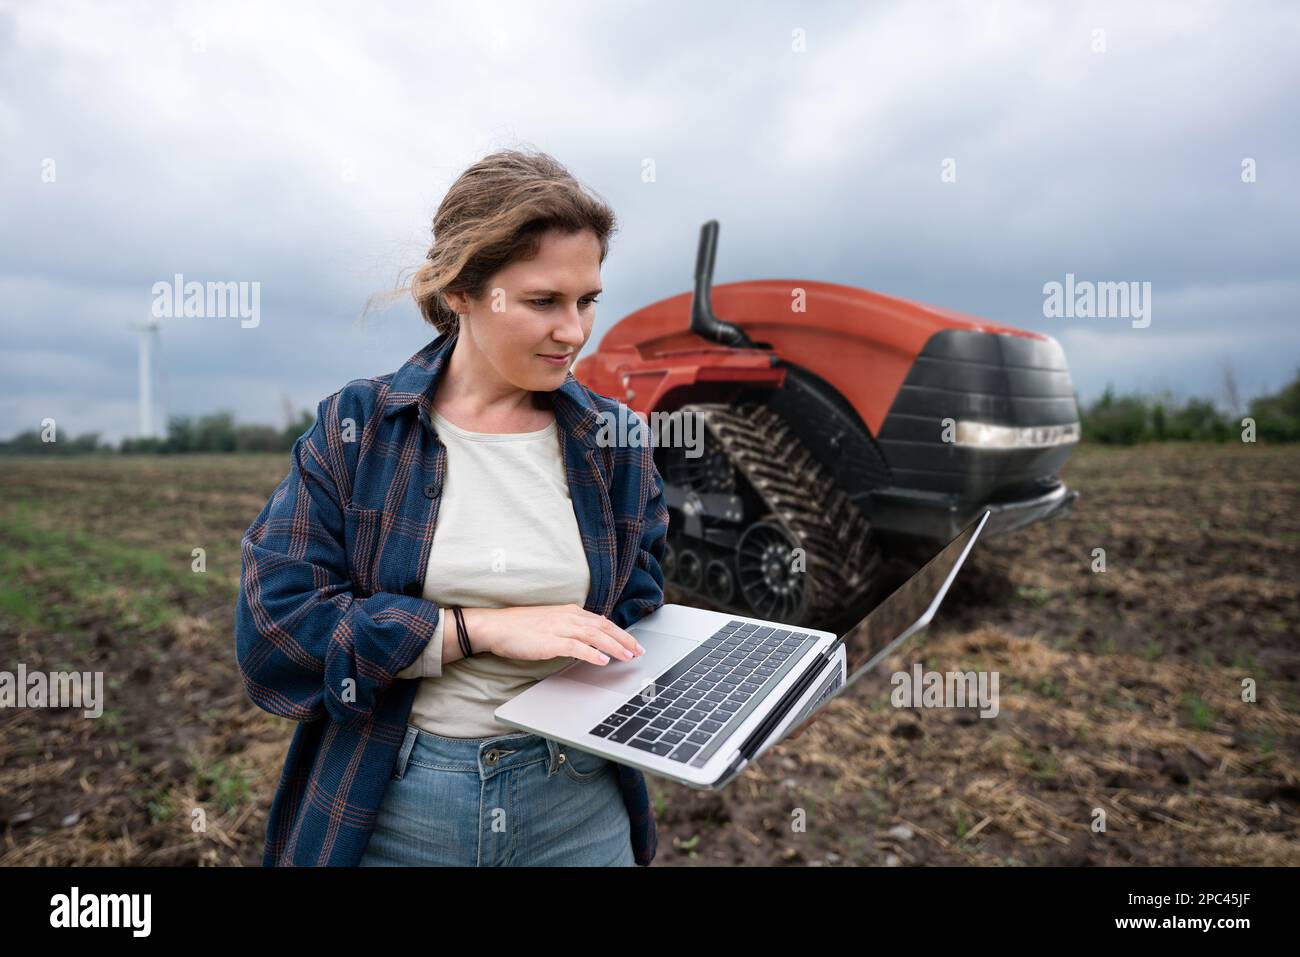 Un agricoltore con tablet digitale controlla un trattore autonomo in un'azienda agricola intelligente Foto Stock